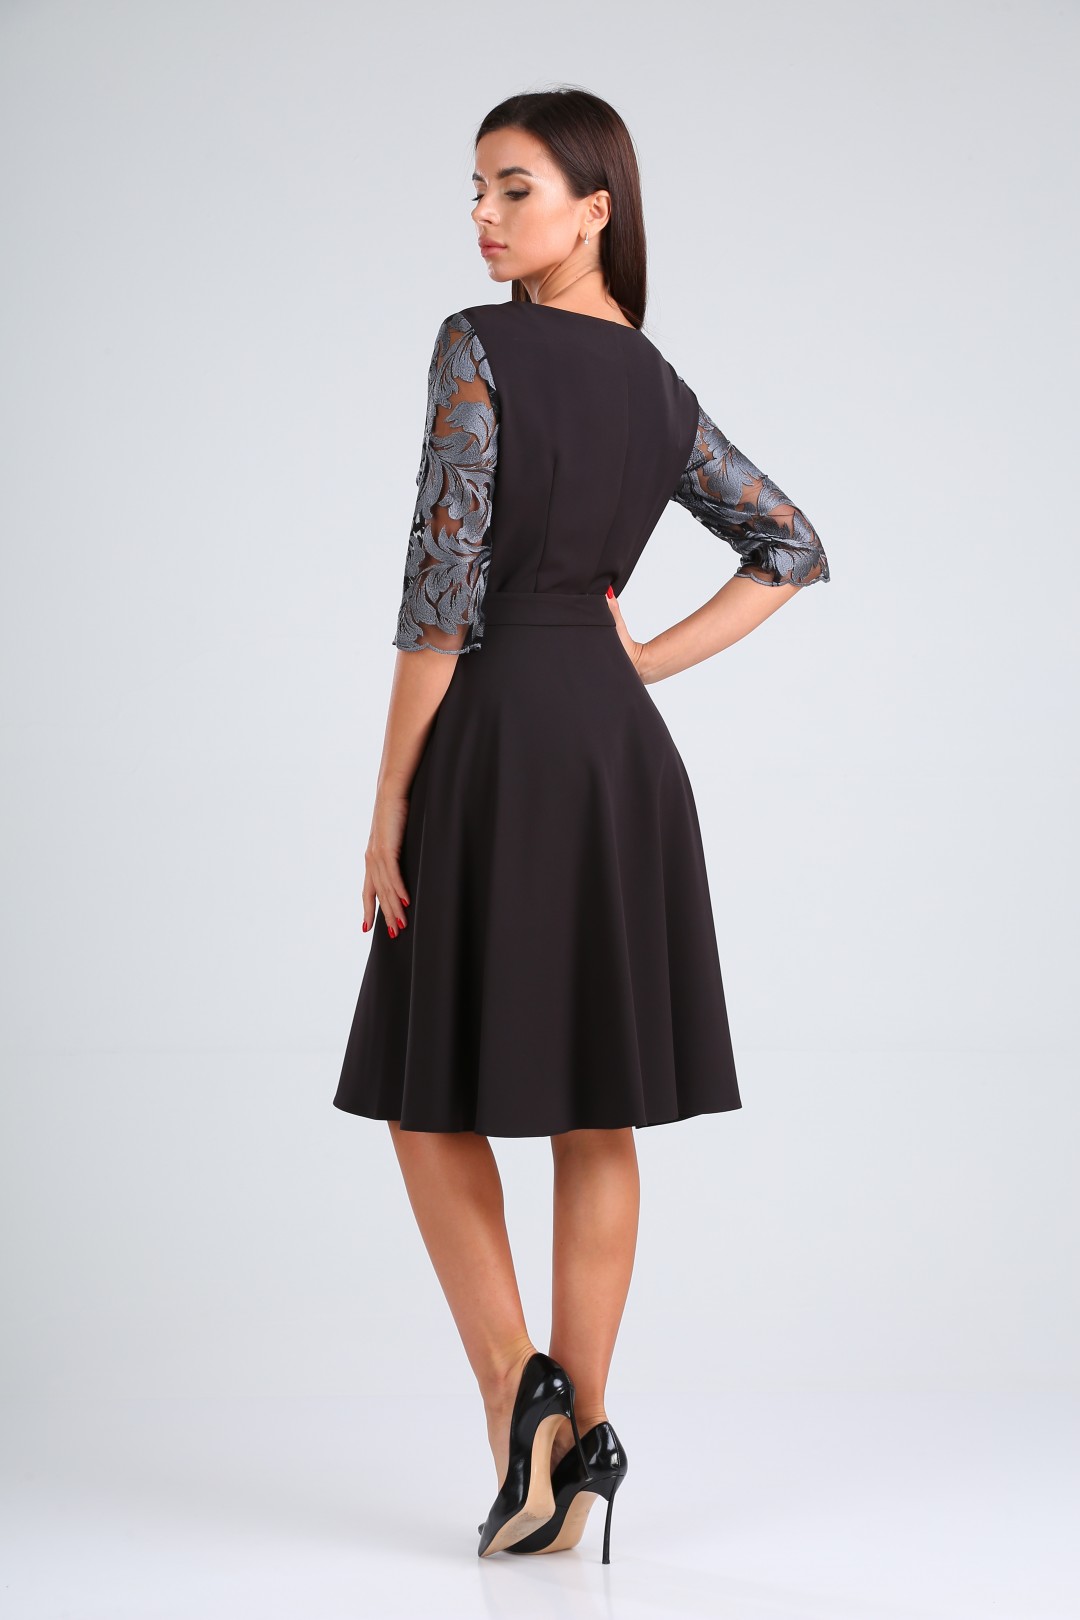 Платье TVIN 5209 серое кружево + черный